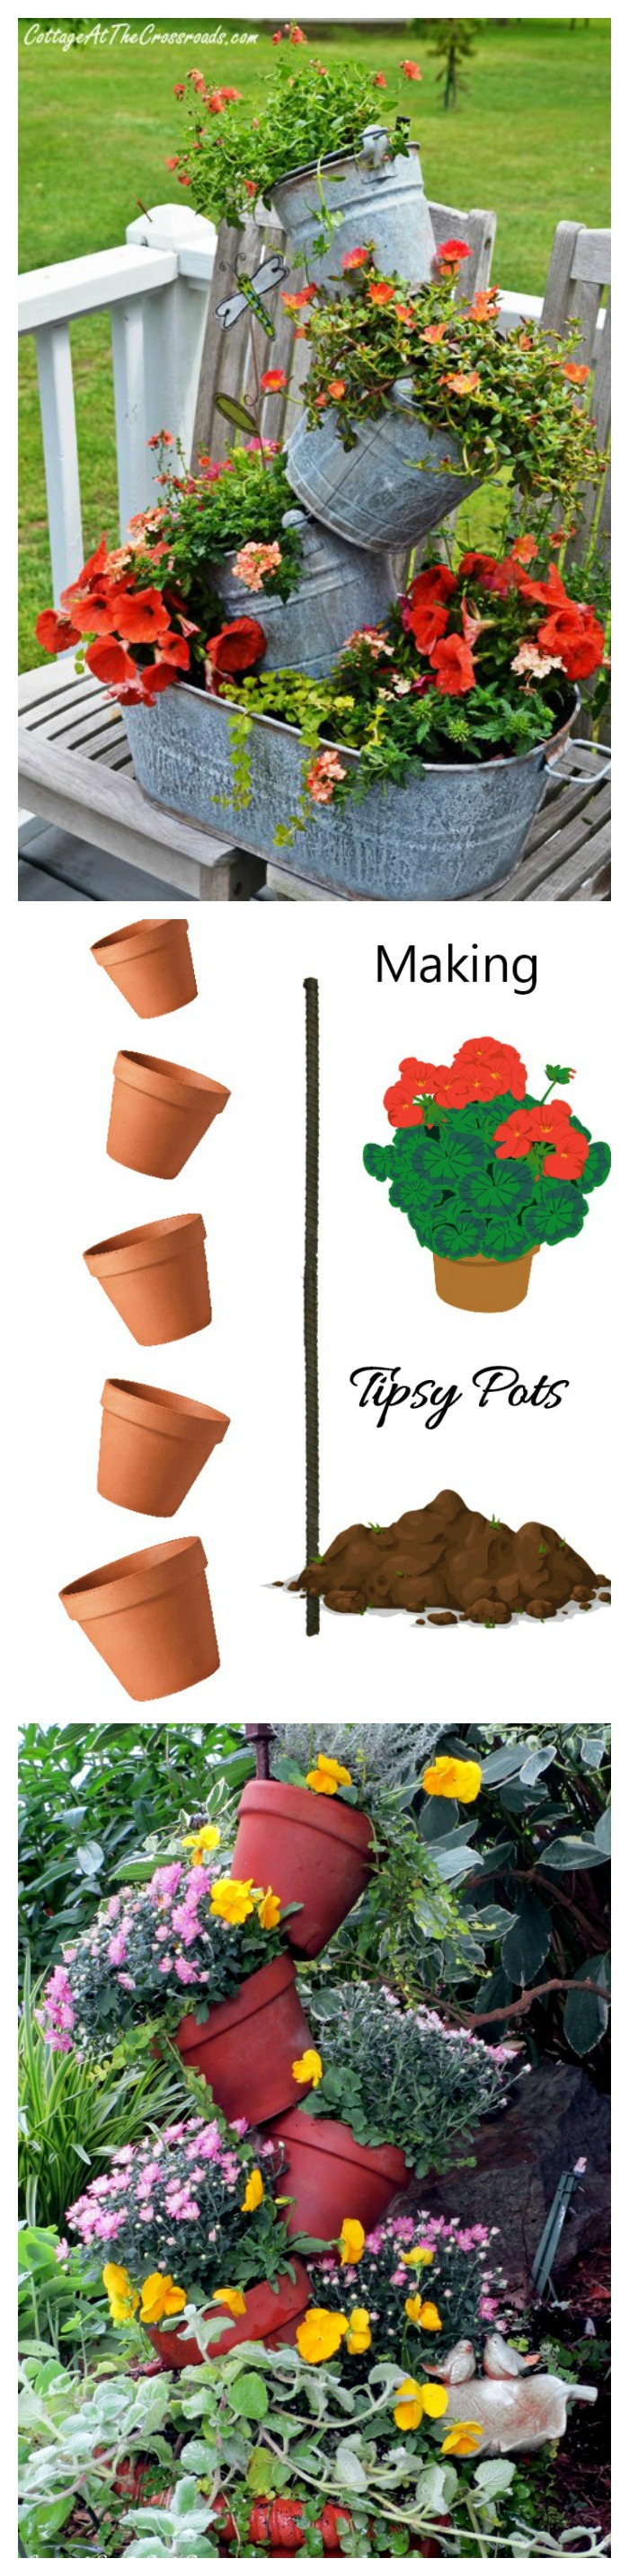 Geriausi "Topsy Turvy" vazonai - kūrybinga sodininkystė "Tipsy Pots